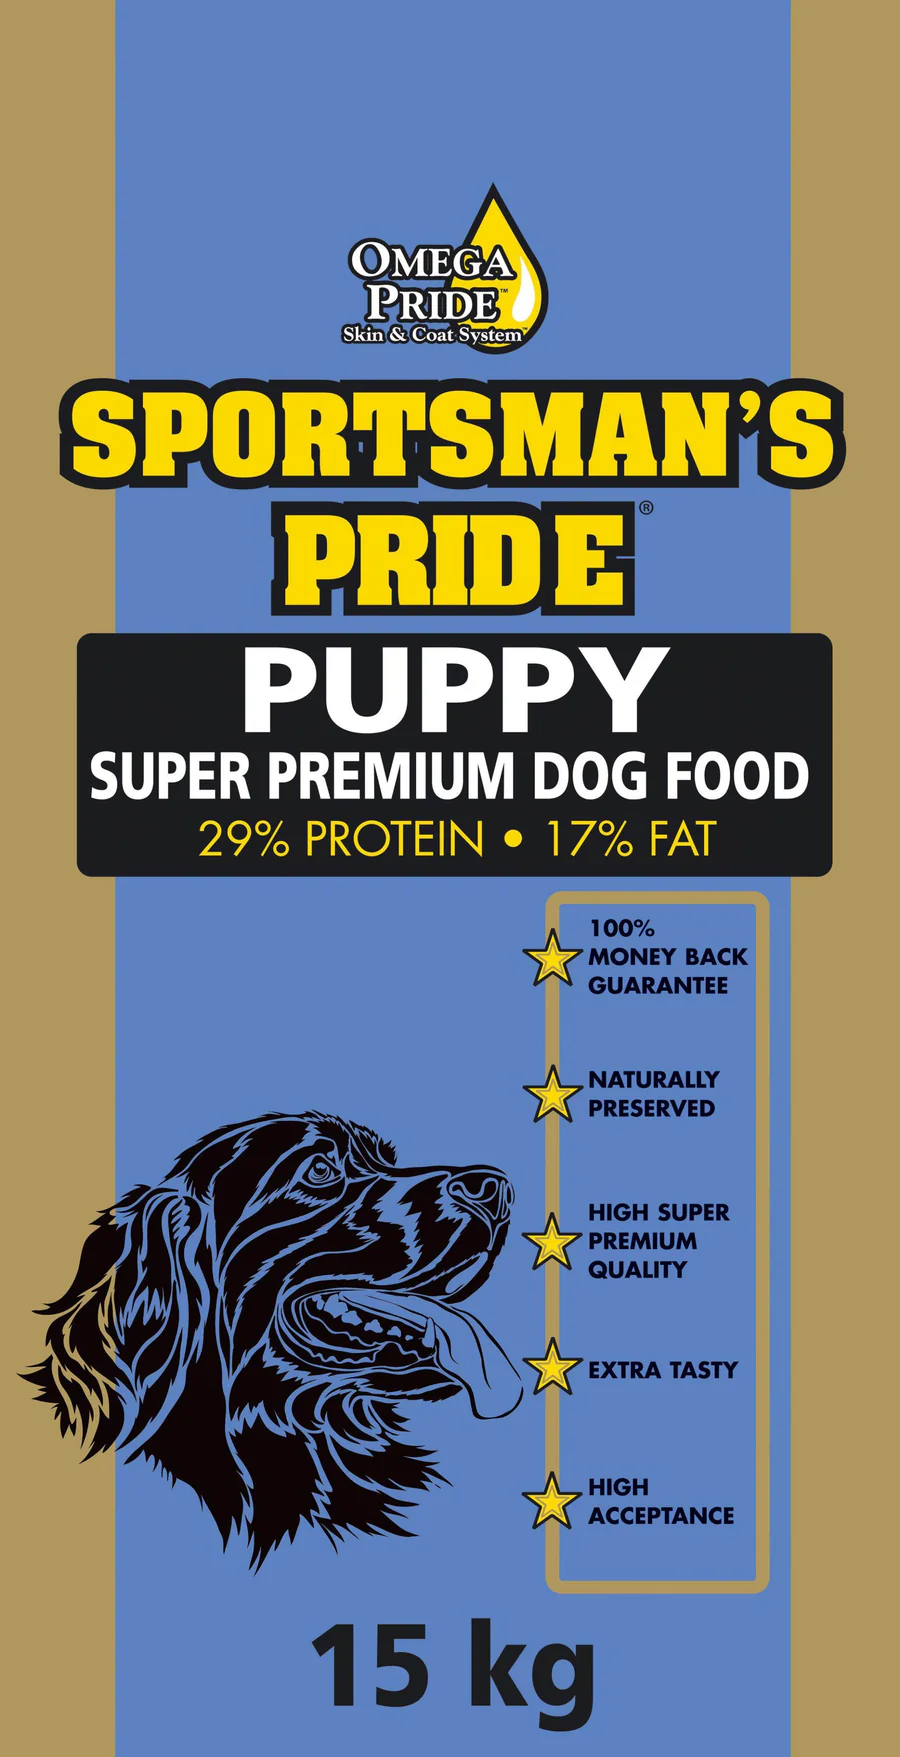 Emballasje av Sportman's Pride Puppy Super Premium Hundefor med 29 % protein og 17 % fett. Den veier 15 kg og gir pengene-tilbake-garanti, høy kvalitet, naturlig bevaring og høy aksept.